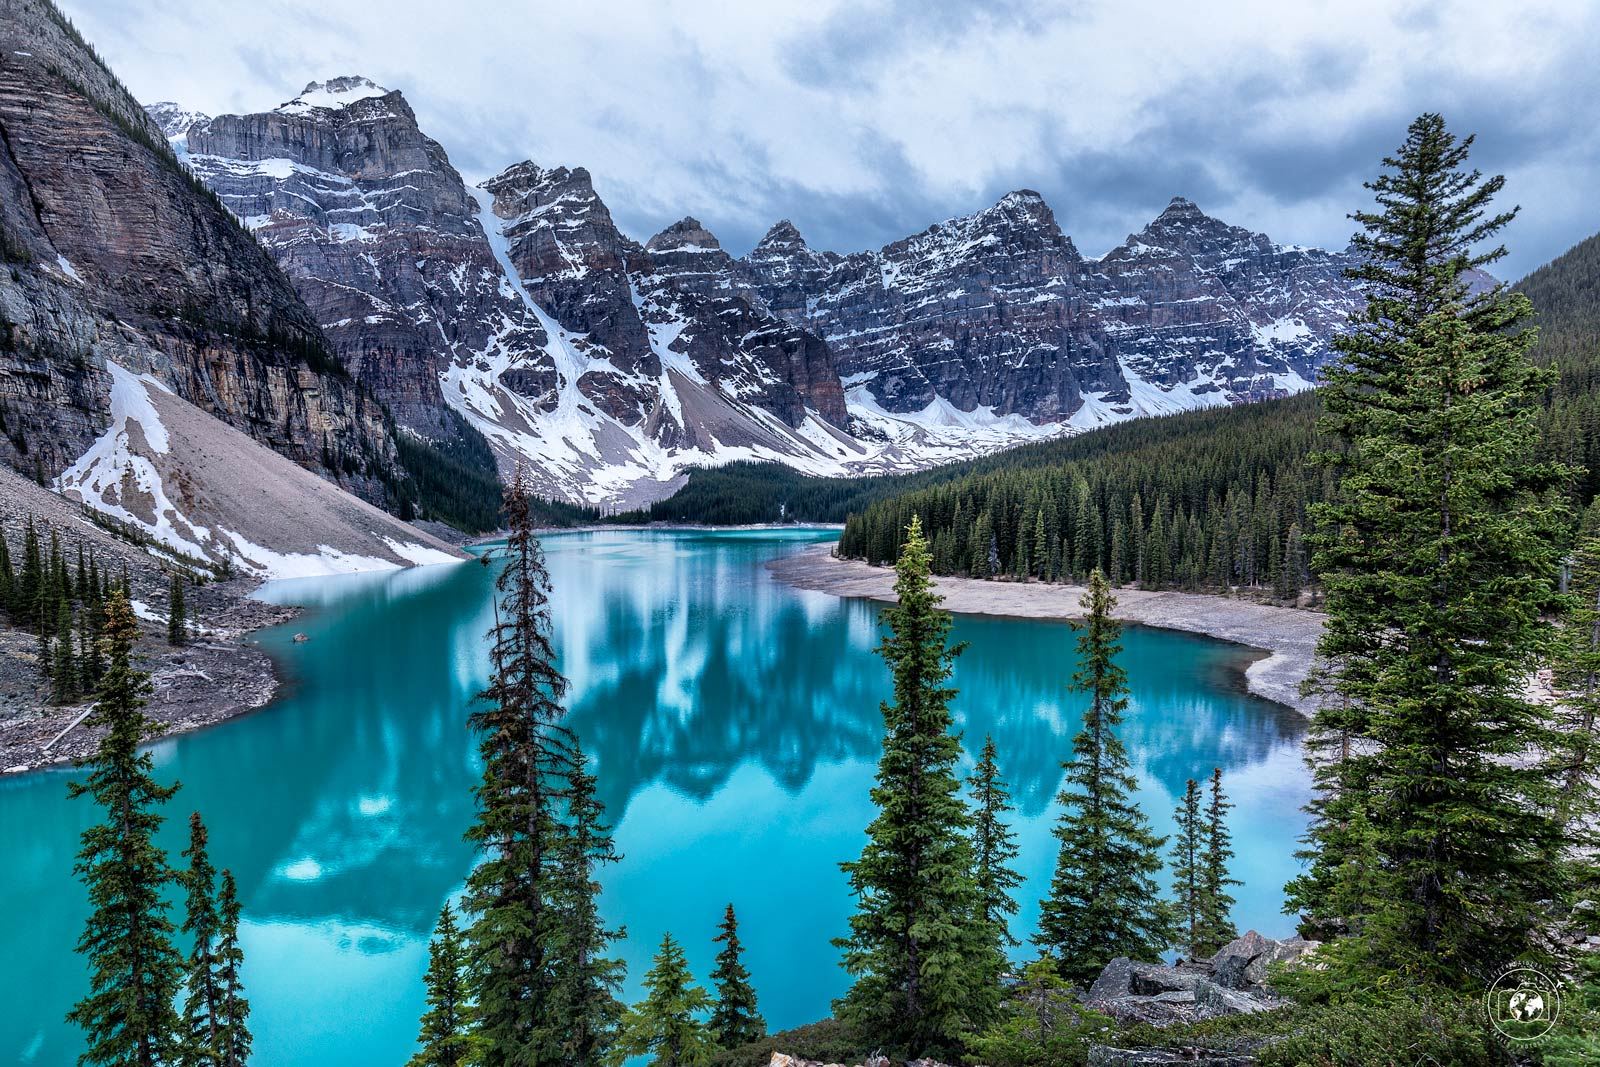 L'iconico Moraine Lake, simbolo delle Canadian Rockies - © Stefano Tiozzo